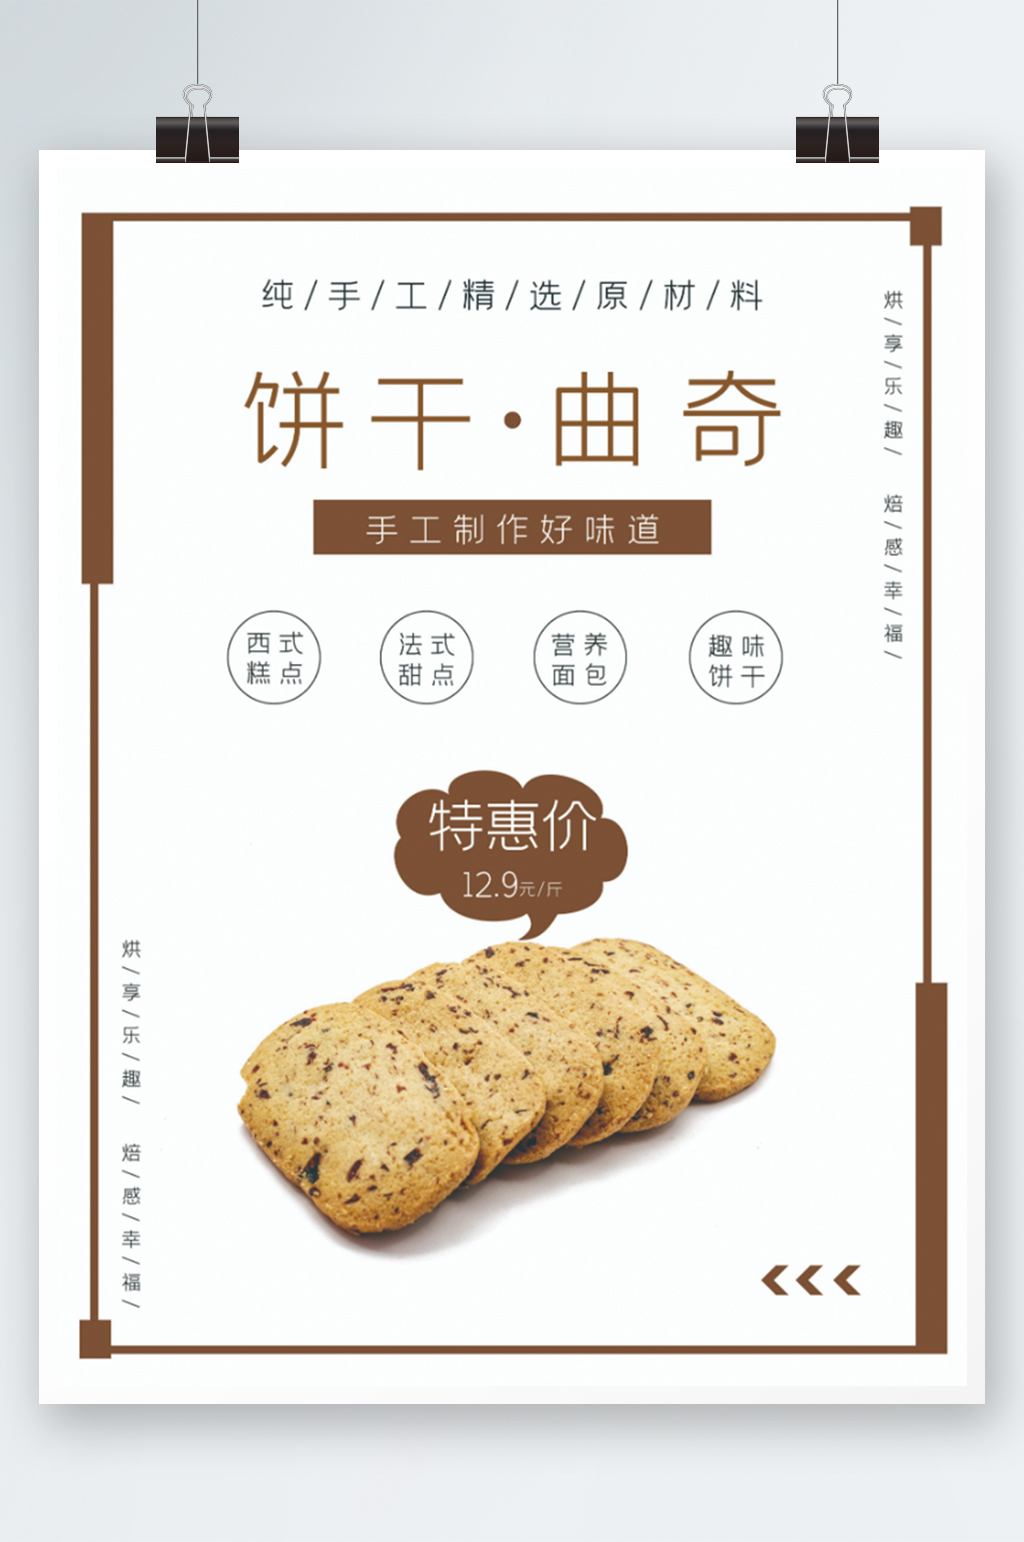 曲奇饼干海报素材免费下载,本作品是由小徐上传的原创平面广告素材